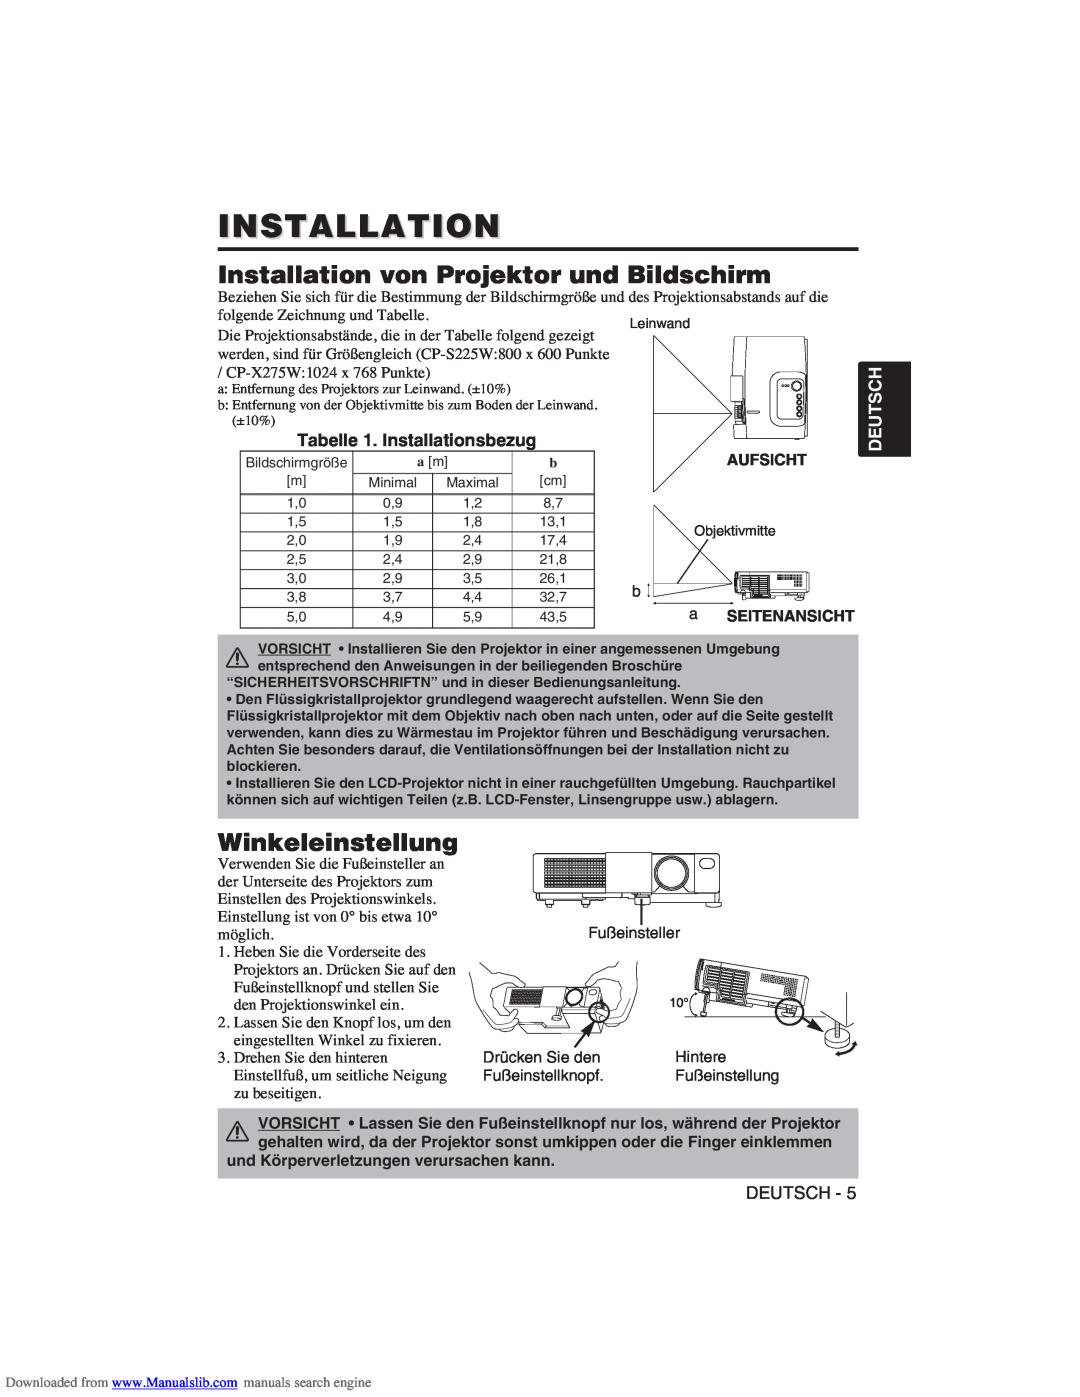 Hitachi CP-X275W Installation von Projektor und Bildschirm, Winkeleinstellung, Tabelle 1. Installationsbezug, Deutsch 